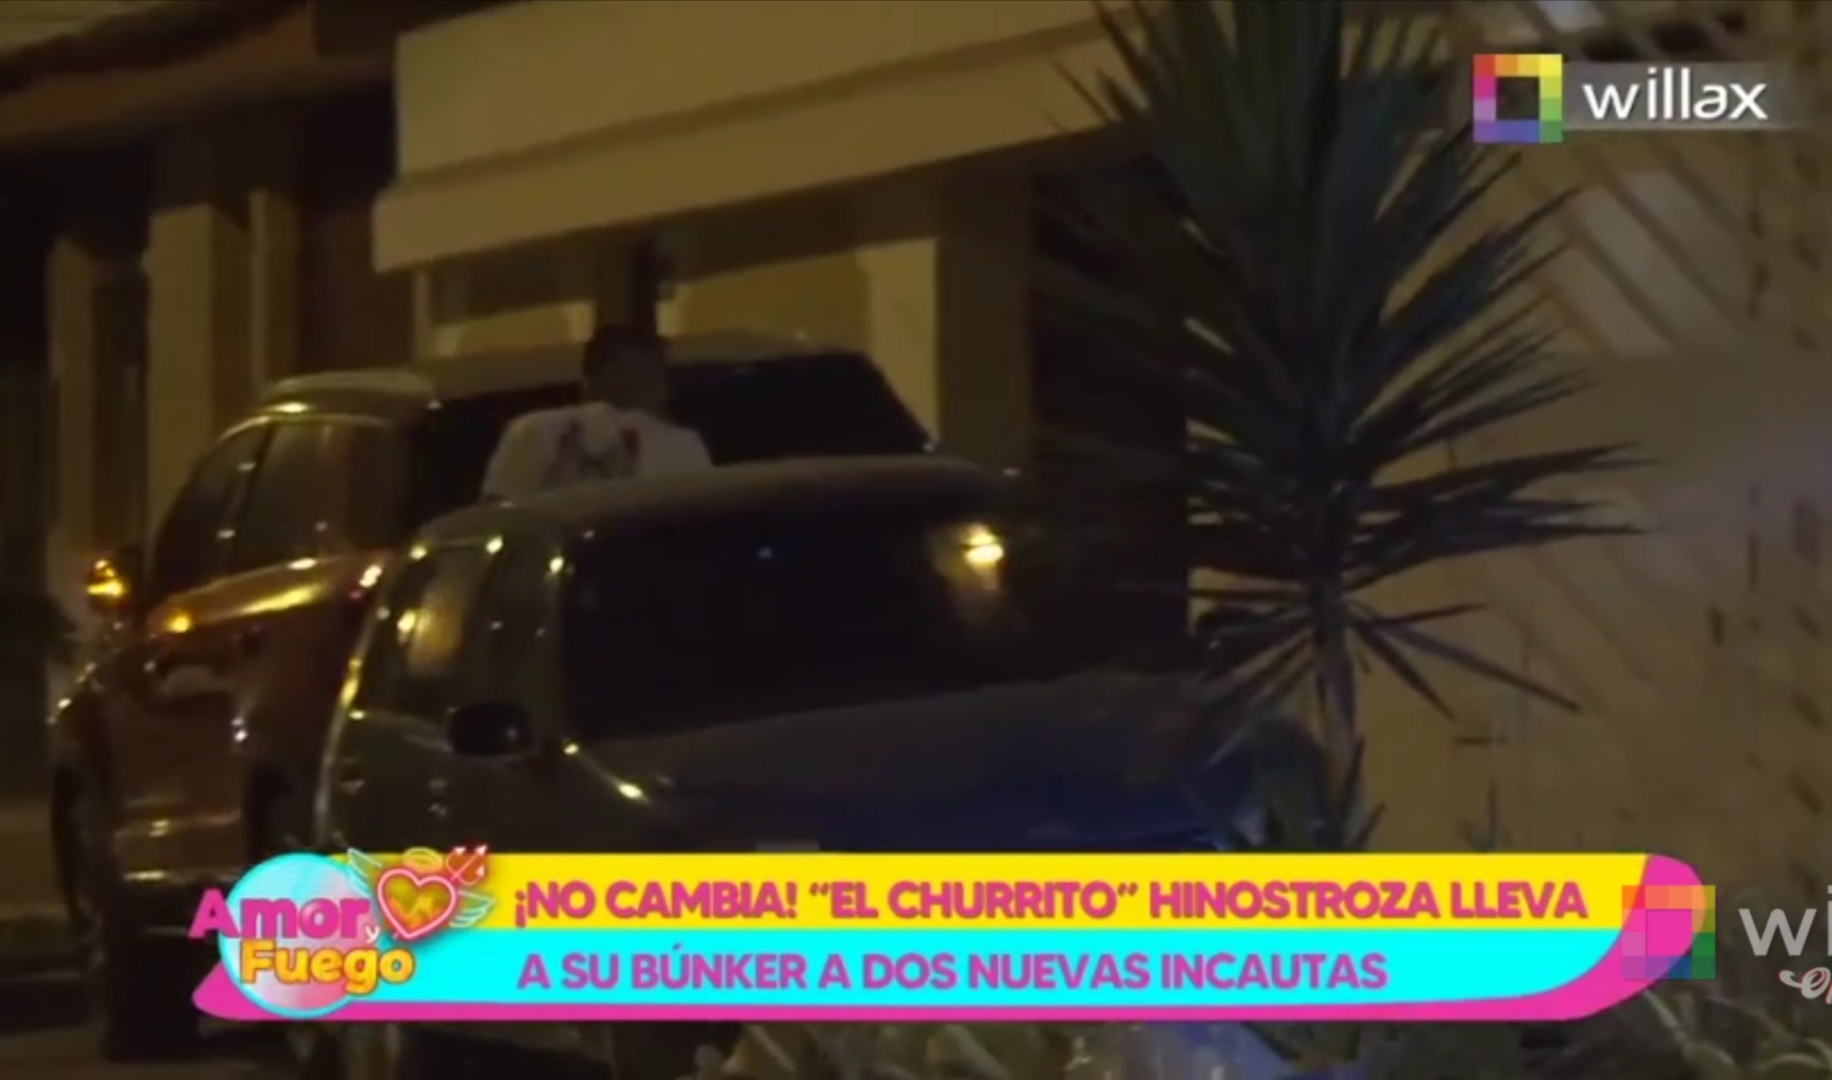 Amor y Fuego: ¡No cambia! "El churrito" Hinostroza lleva a su búnker a dos nuevas incautas | VIDEO